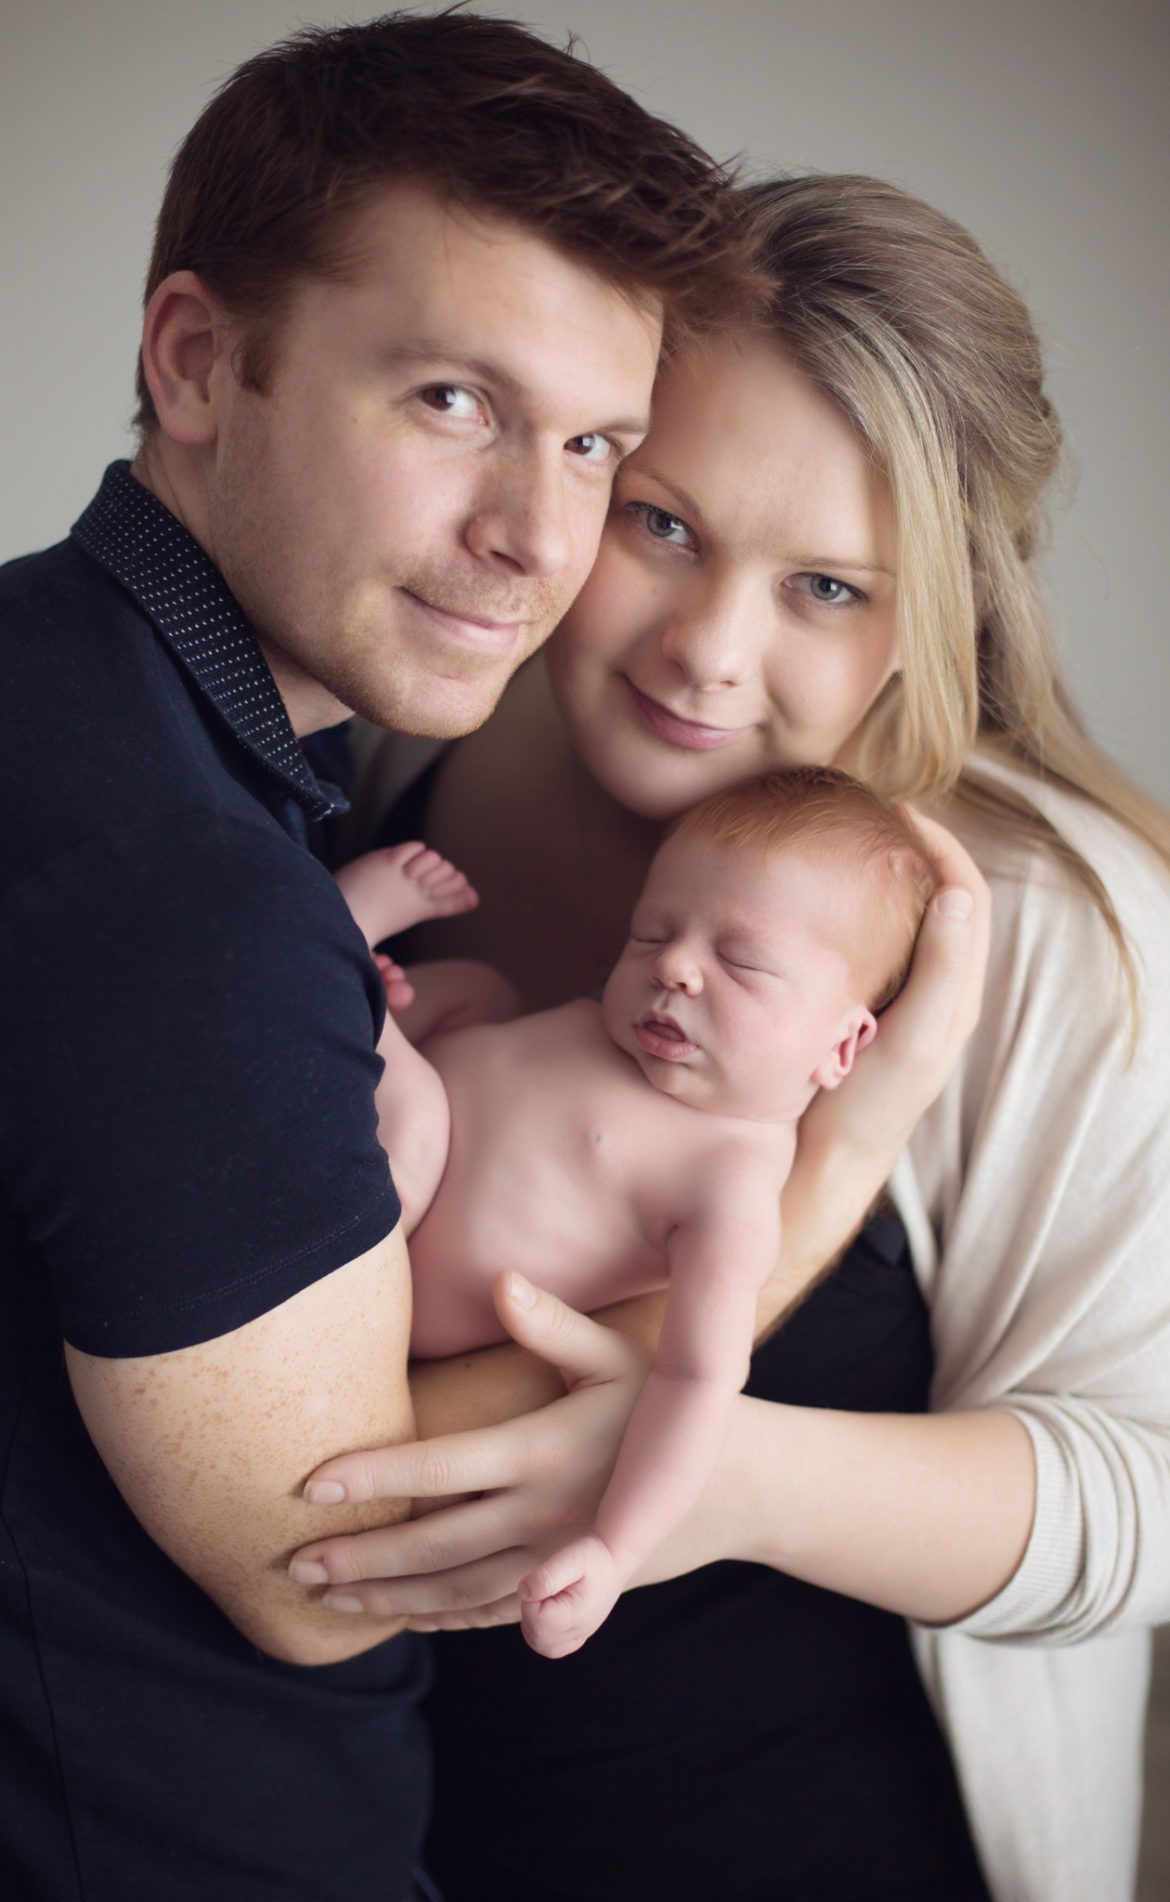 مدل عکس نوزاد با پدر و مادر
